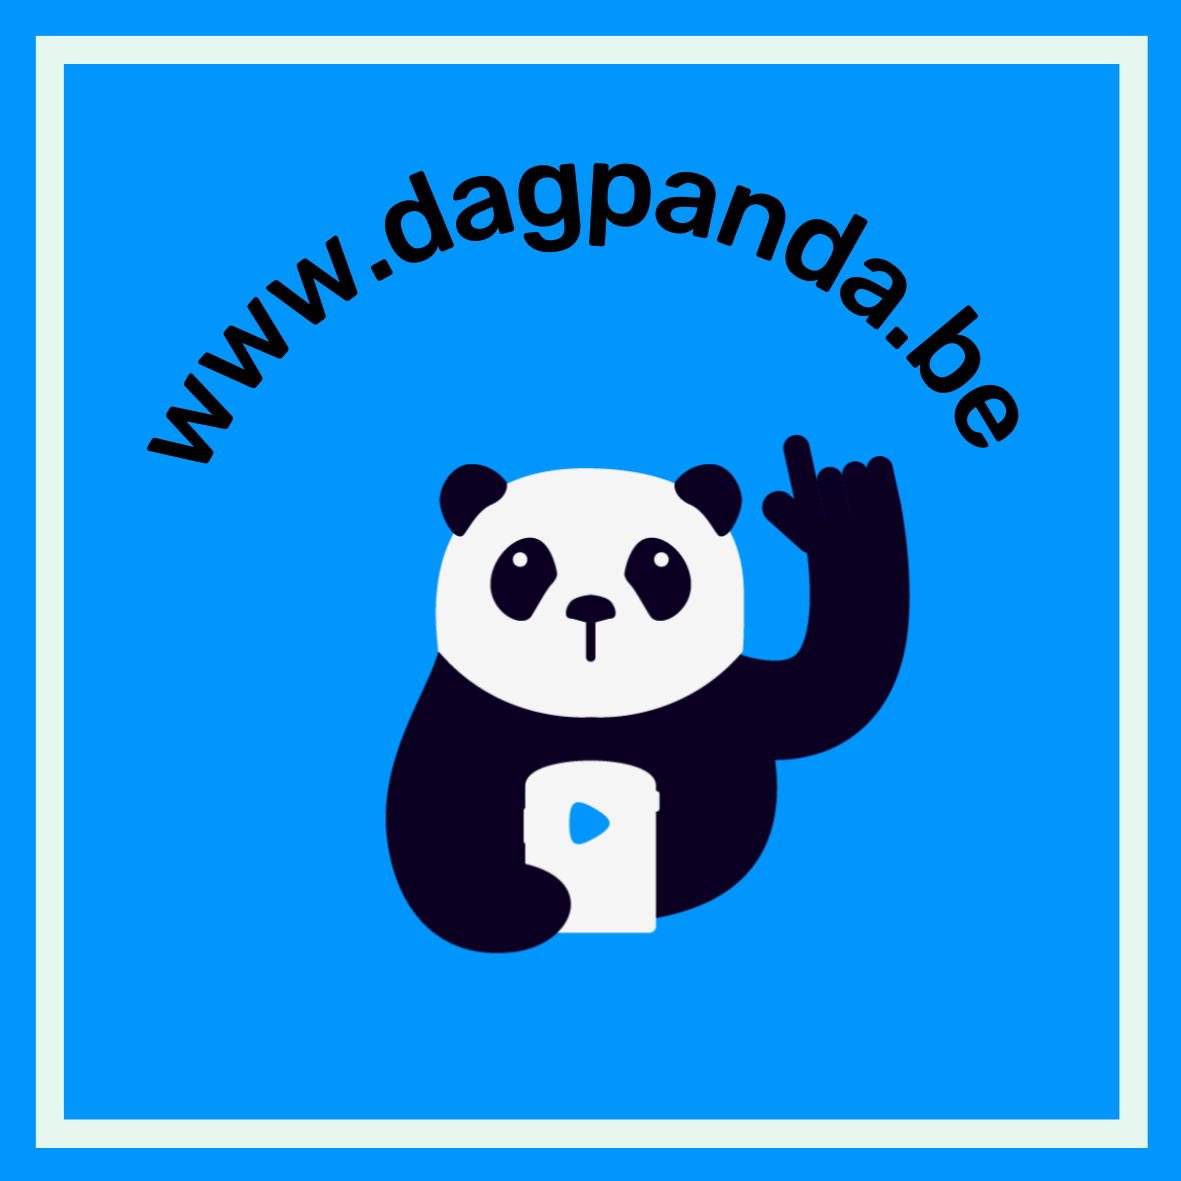 logo van de website www.dagpanda.be - panda op een blauwe achtergrond